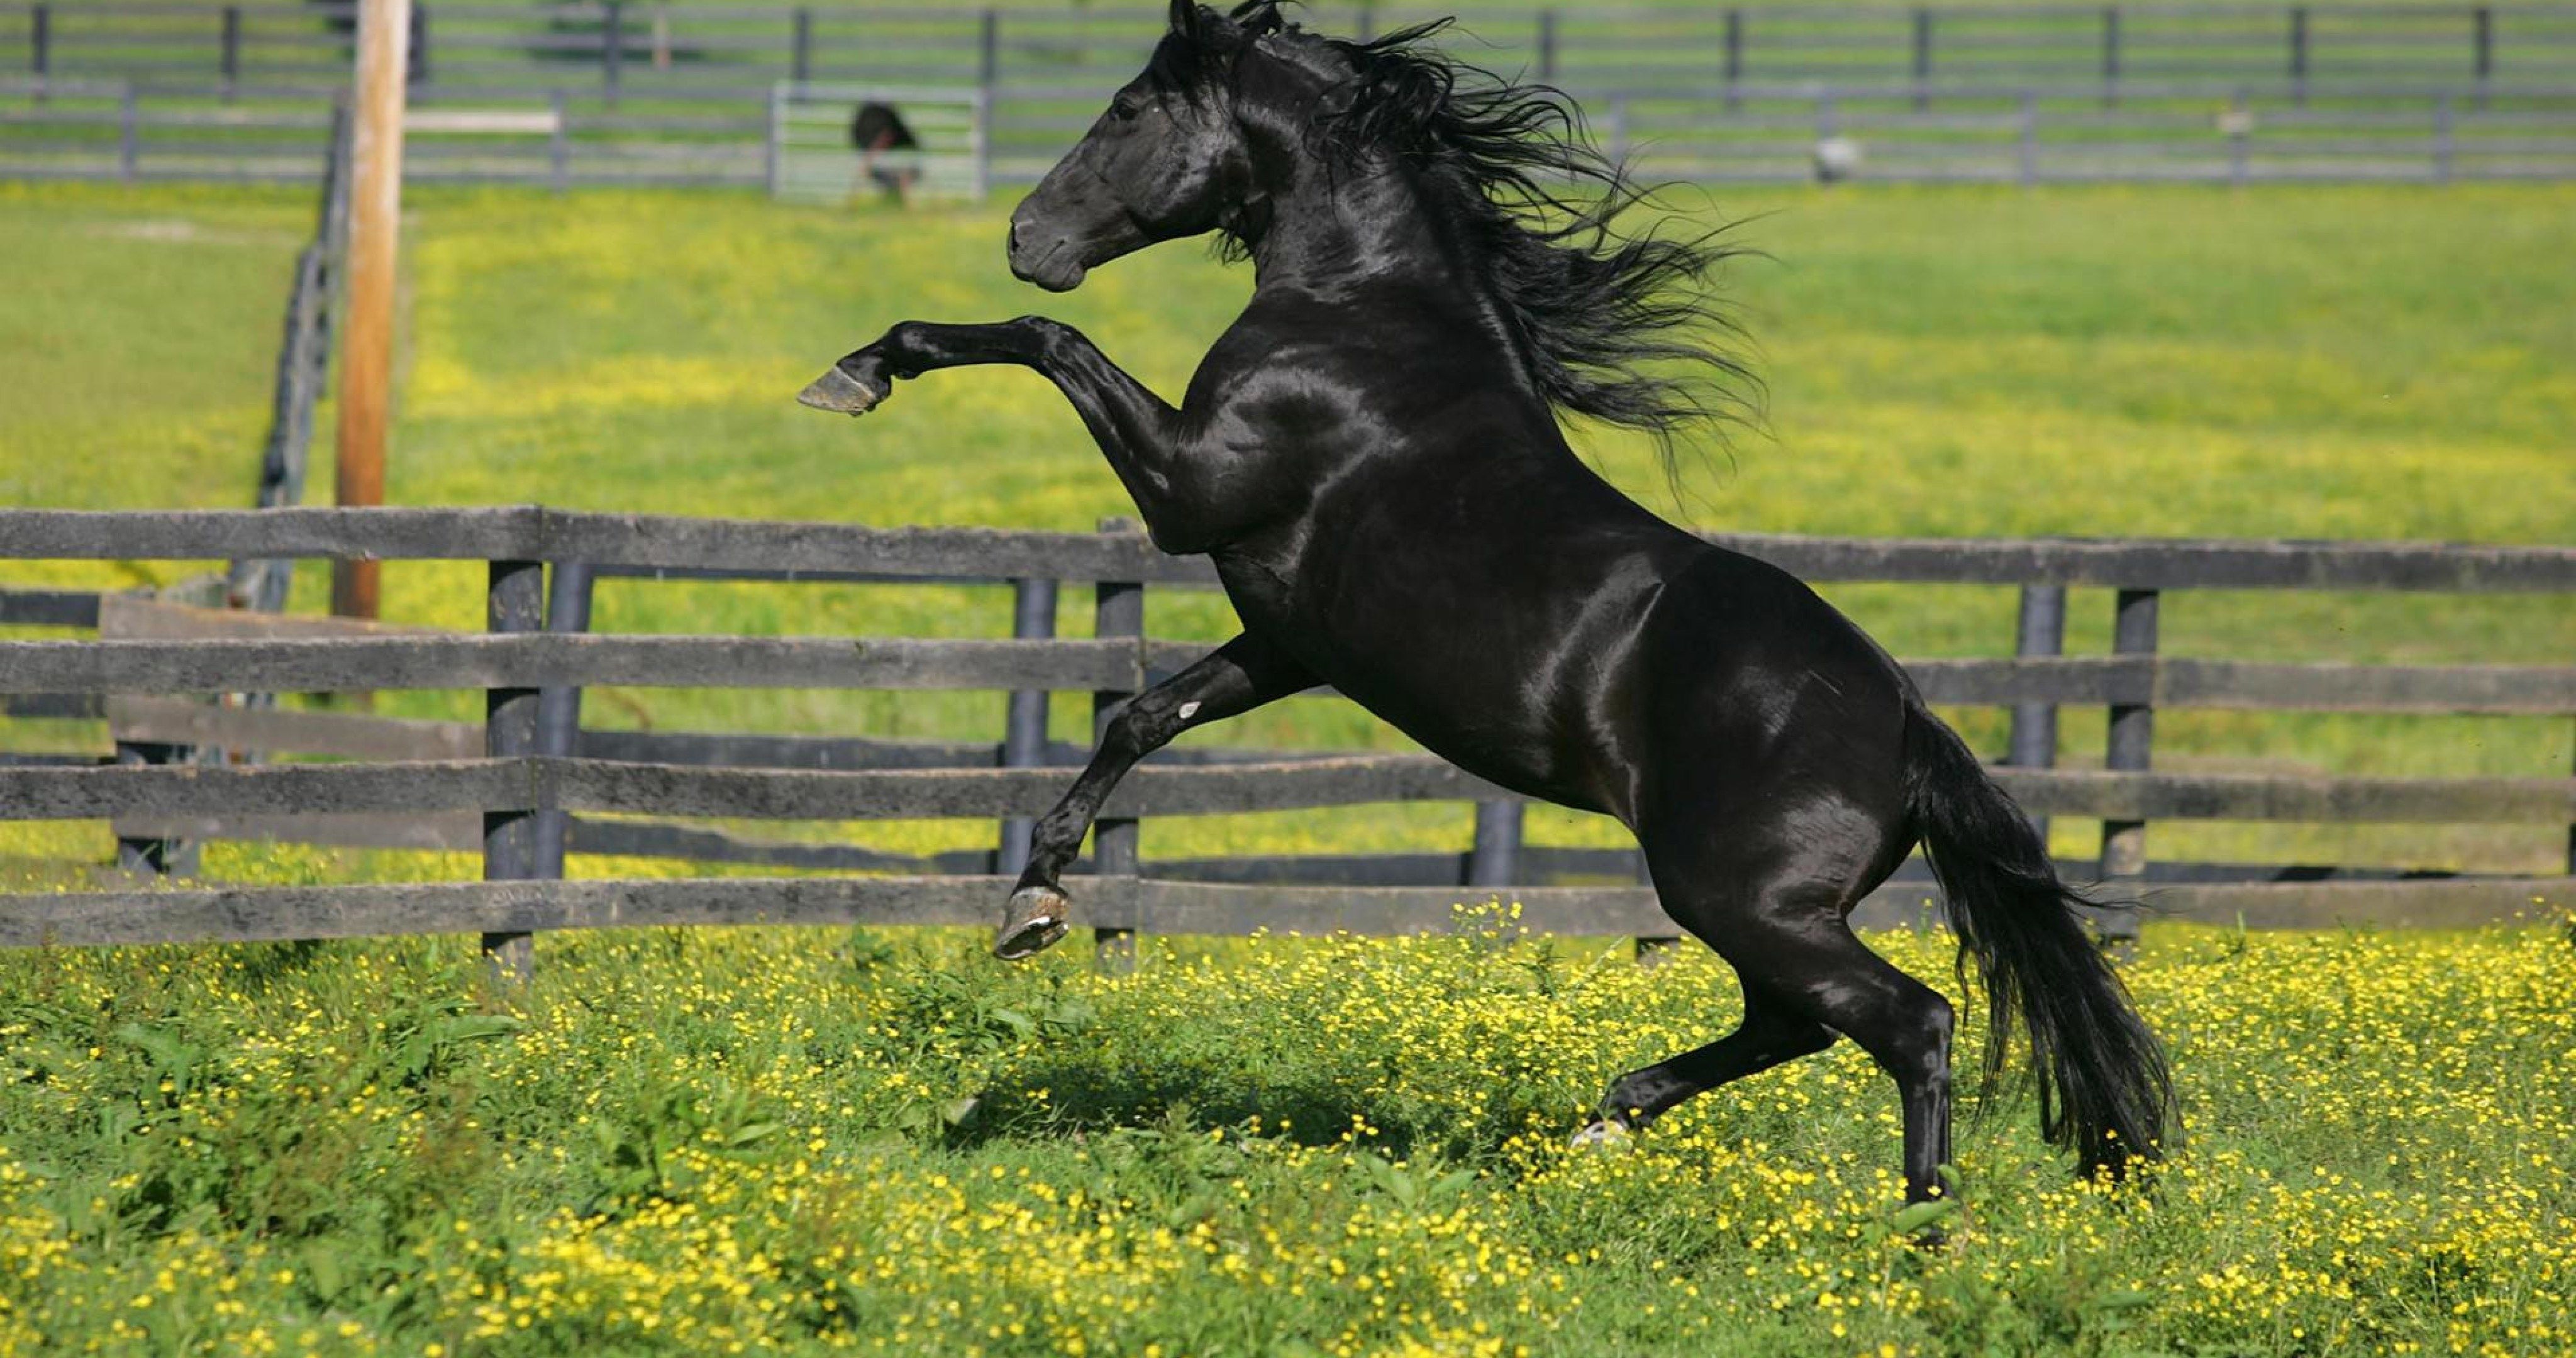 Black Horse Corral 4k Ultra HD Wallpaper Horses Beautiful